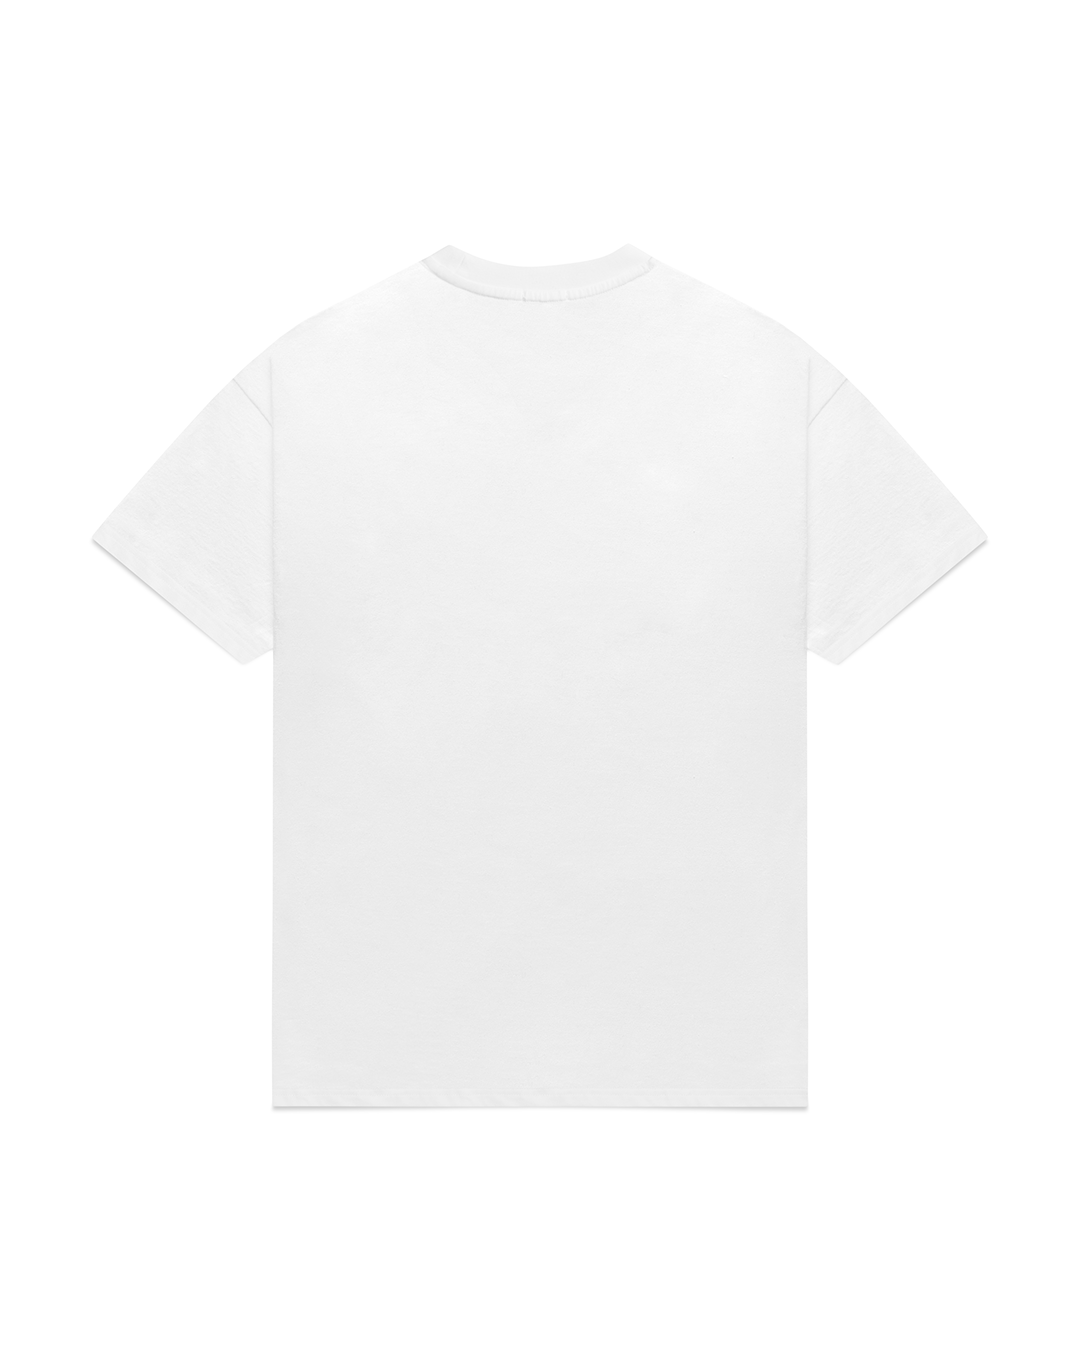 Chair T-shirt – Mutimer